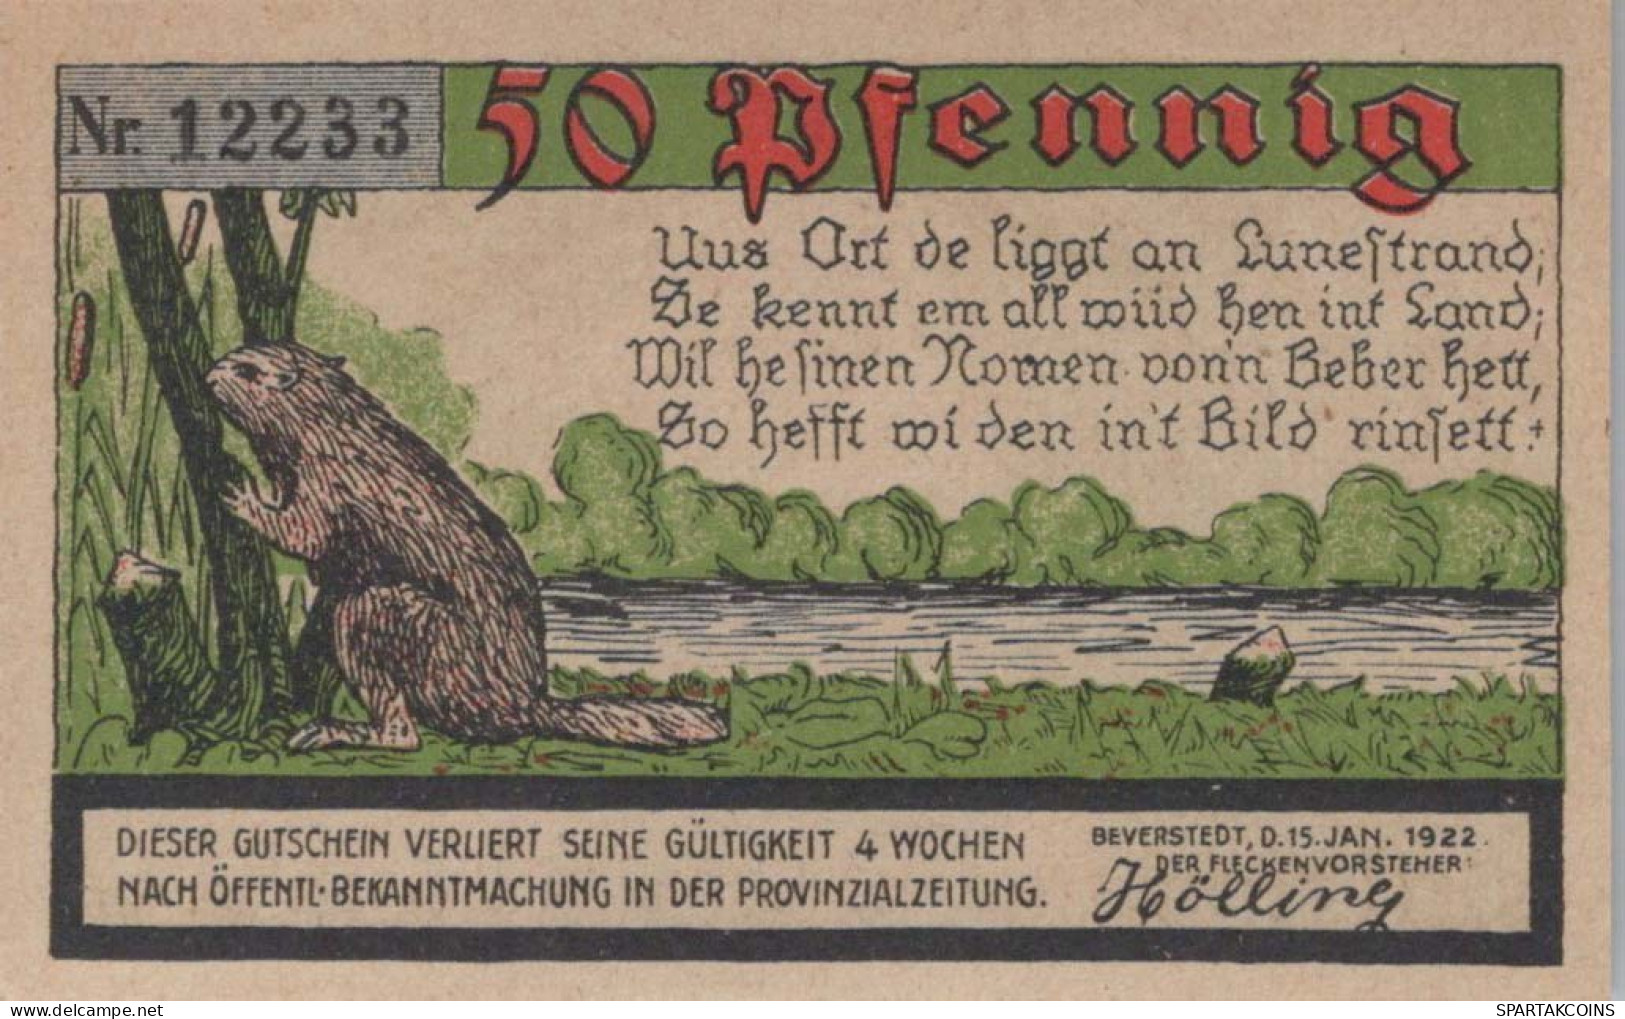 50 PFENNIG 1922 Stadt BEVERSTEDT Hanover UNC DEUTSCHLAND Notgeld Banknote #PA209 - [11] Local Banknote Issues